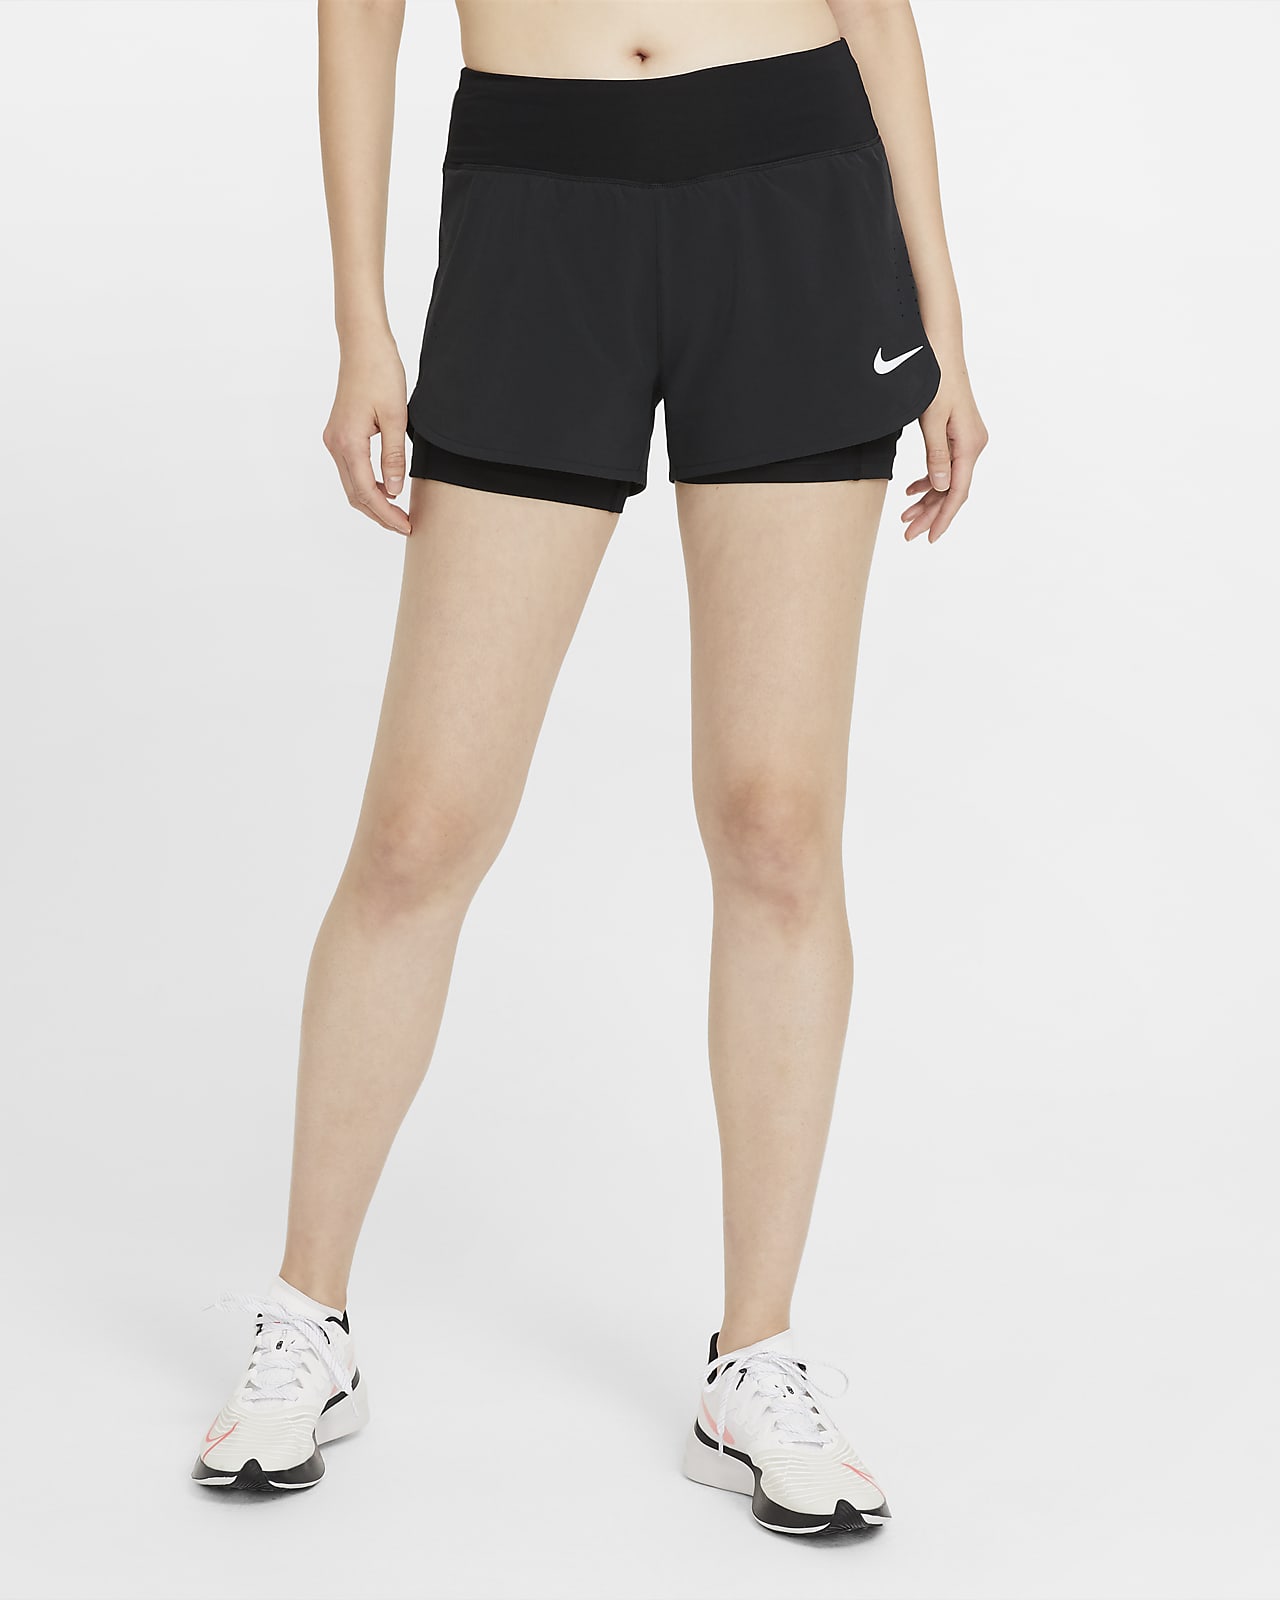 recorder Tulpen belegd broodje Nike Eclipse 2-in-1 hardloopshorts voor dames. Nike NL